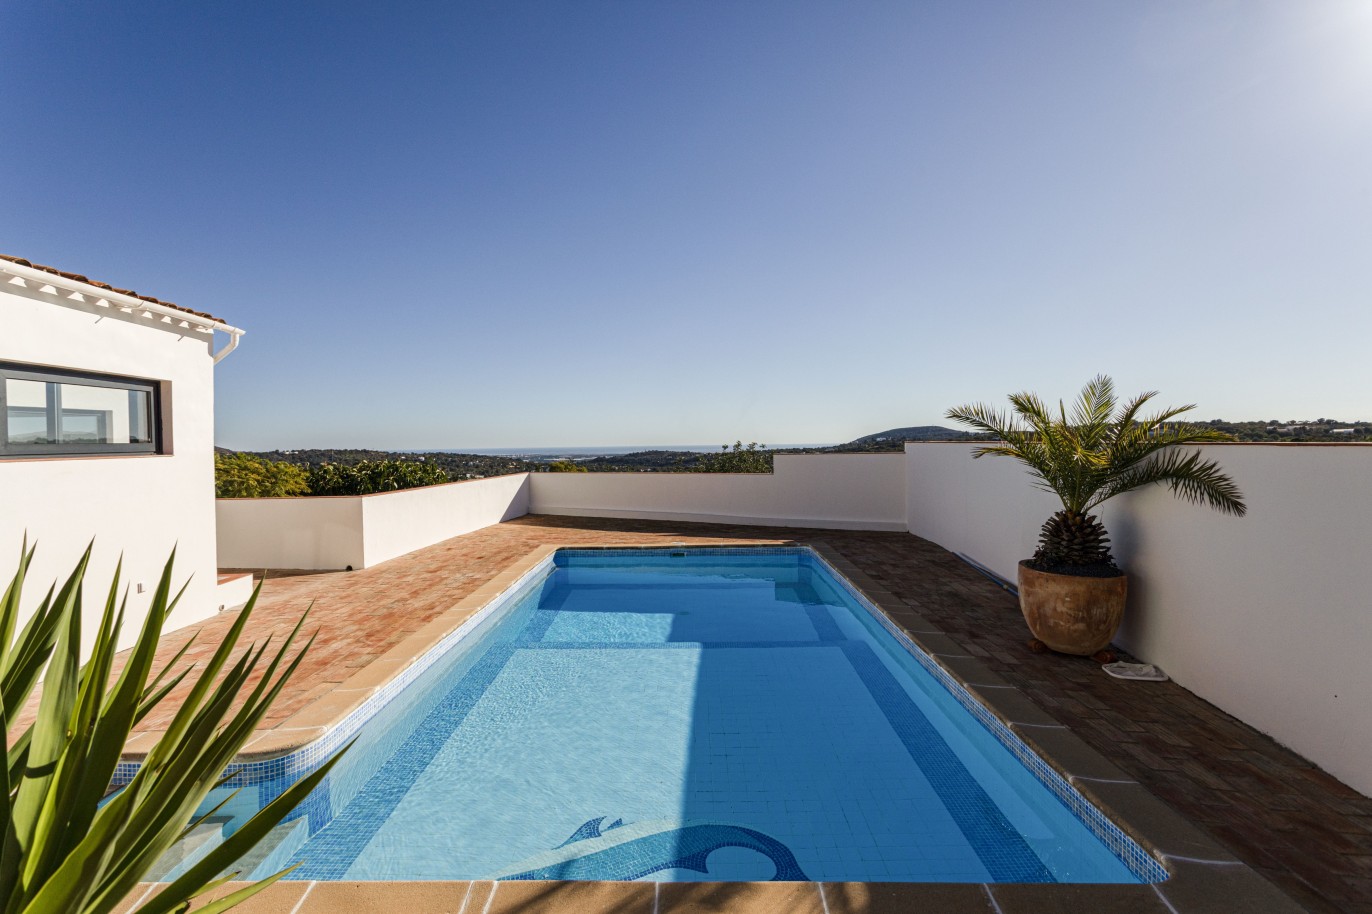 3 bedroom villa with sea view and pool, for sale in Santa Barbara, Algarve_246326